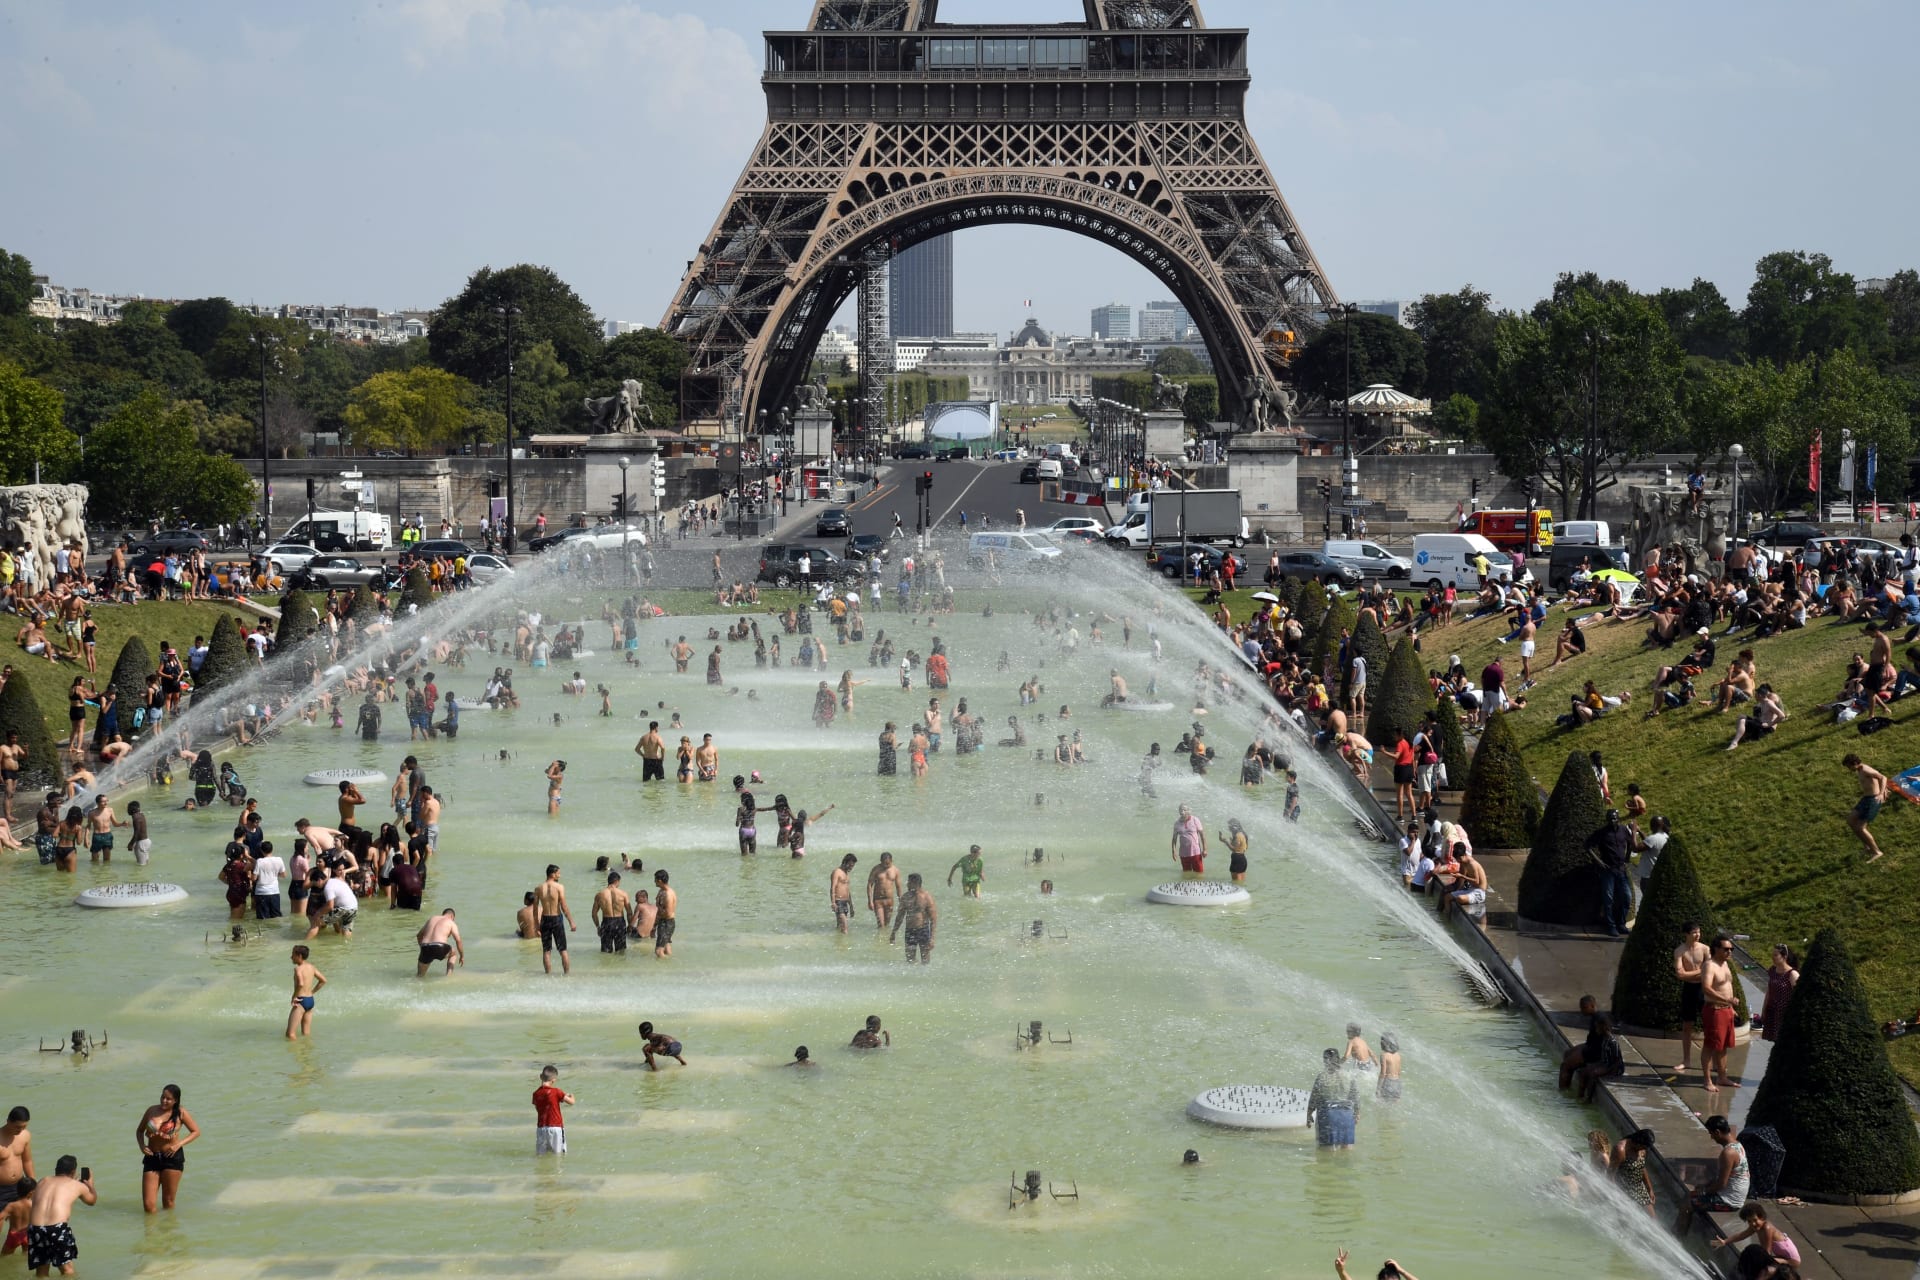 فرنسا تسجل 1500 حالة وفاة نتيجة ارتفاع درجات الحرارة خلال فصل الصيف